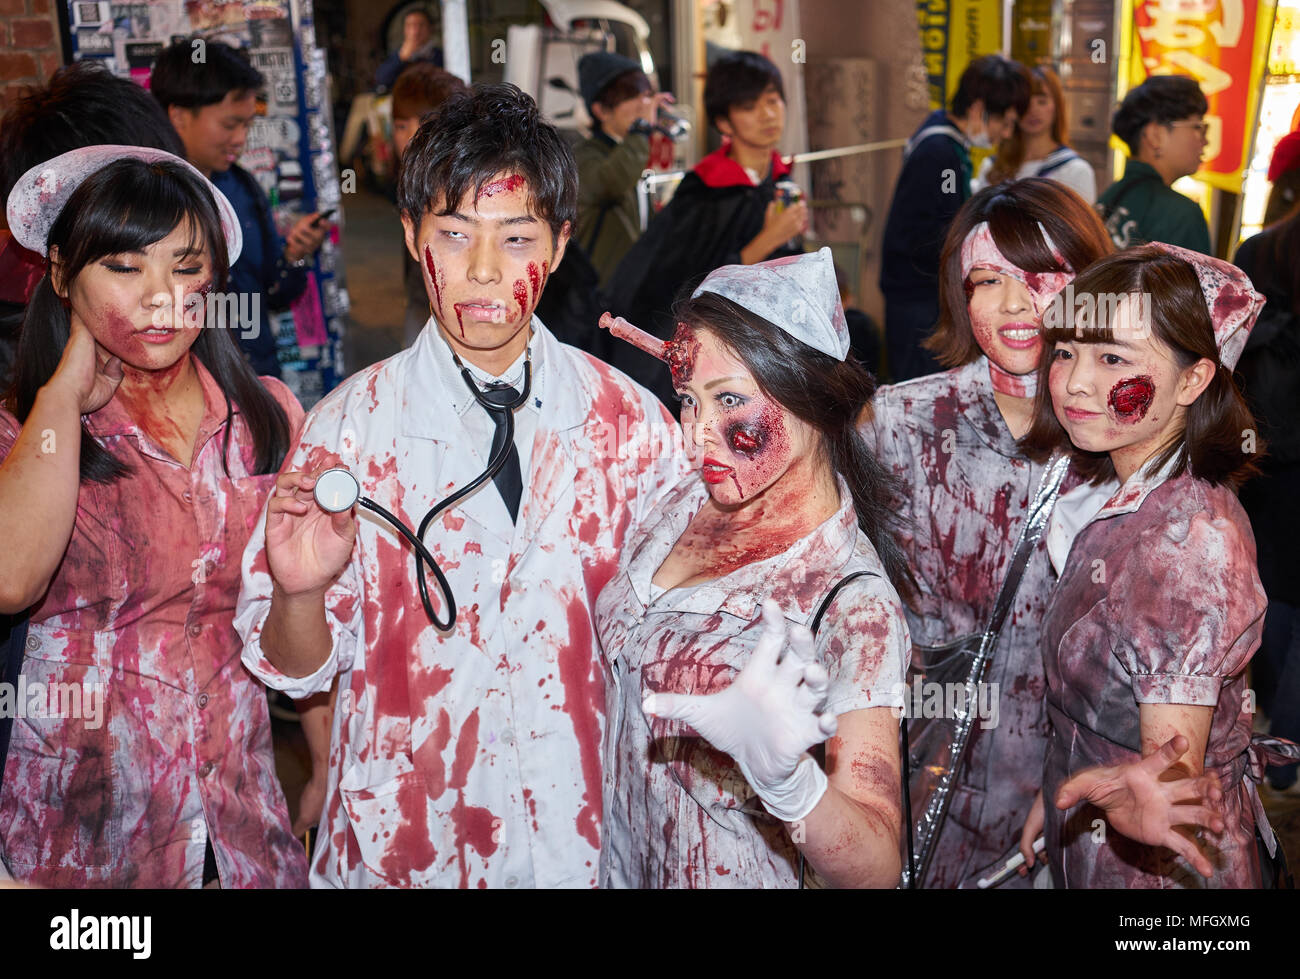 Médecins et infirmières zombie de costumes à la fête d'Halloween à Shibuya, Tokyo, Japon, Asie Banque D'Images